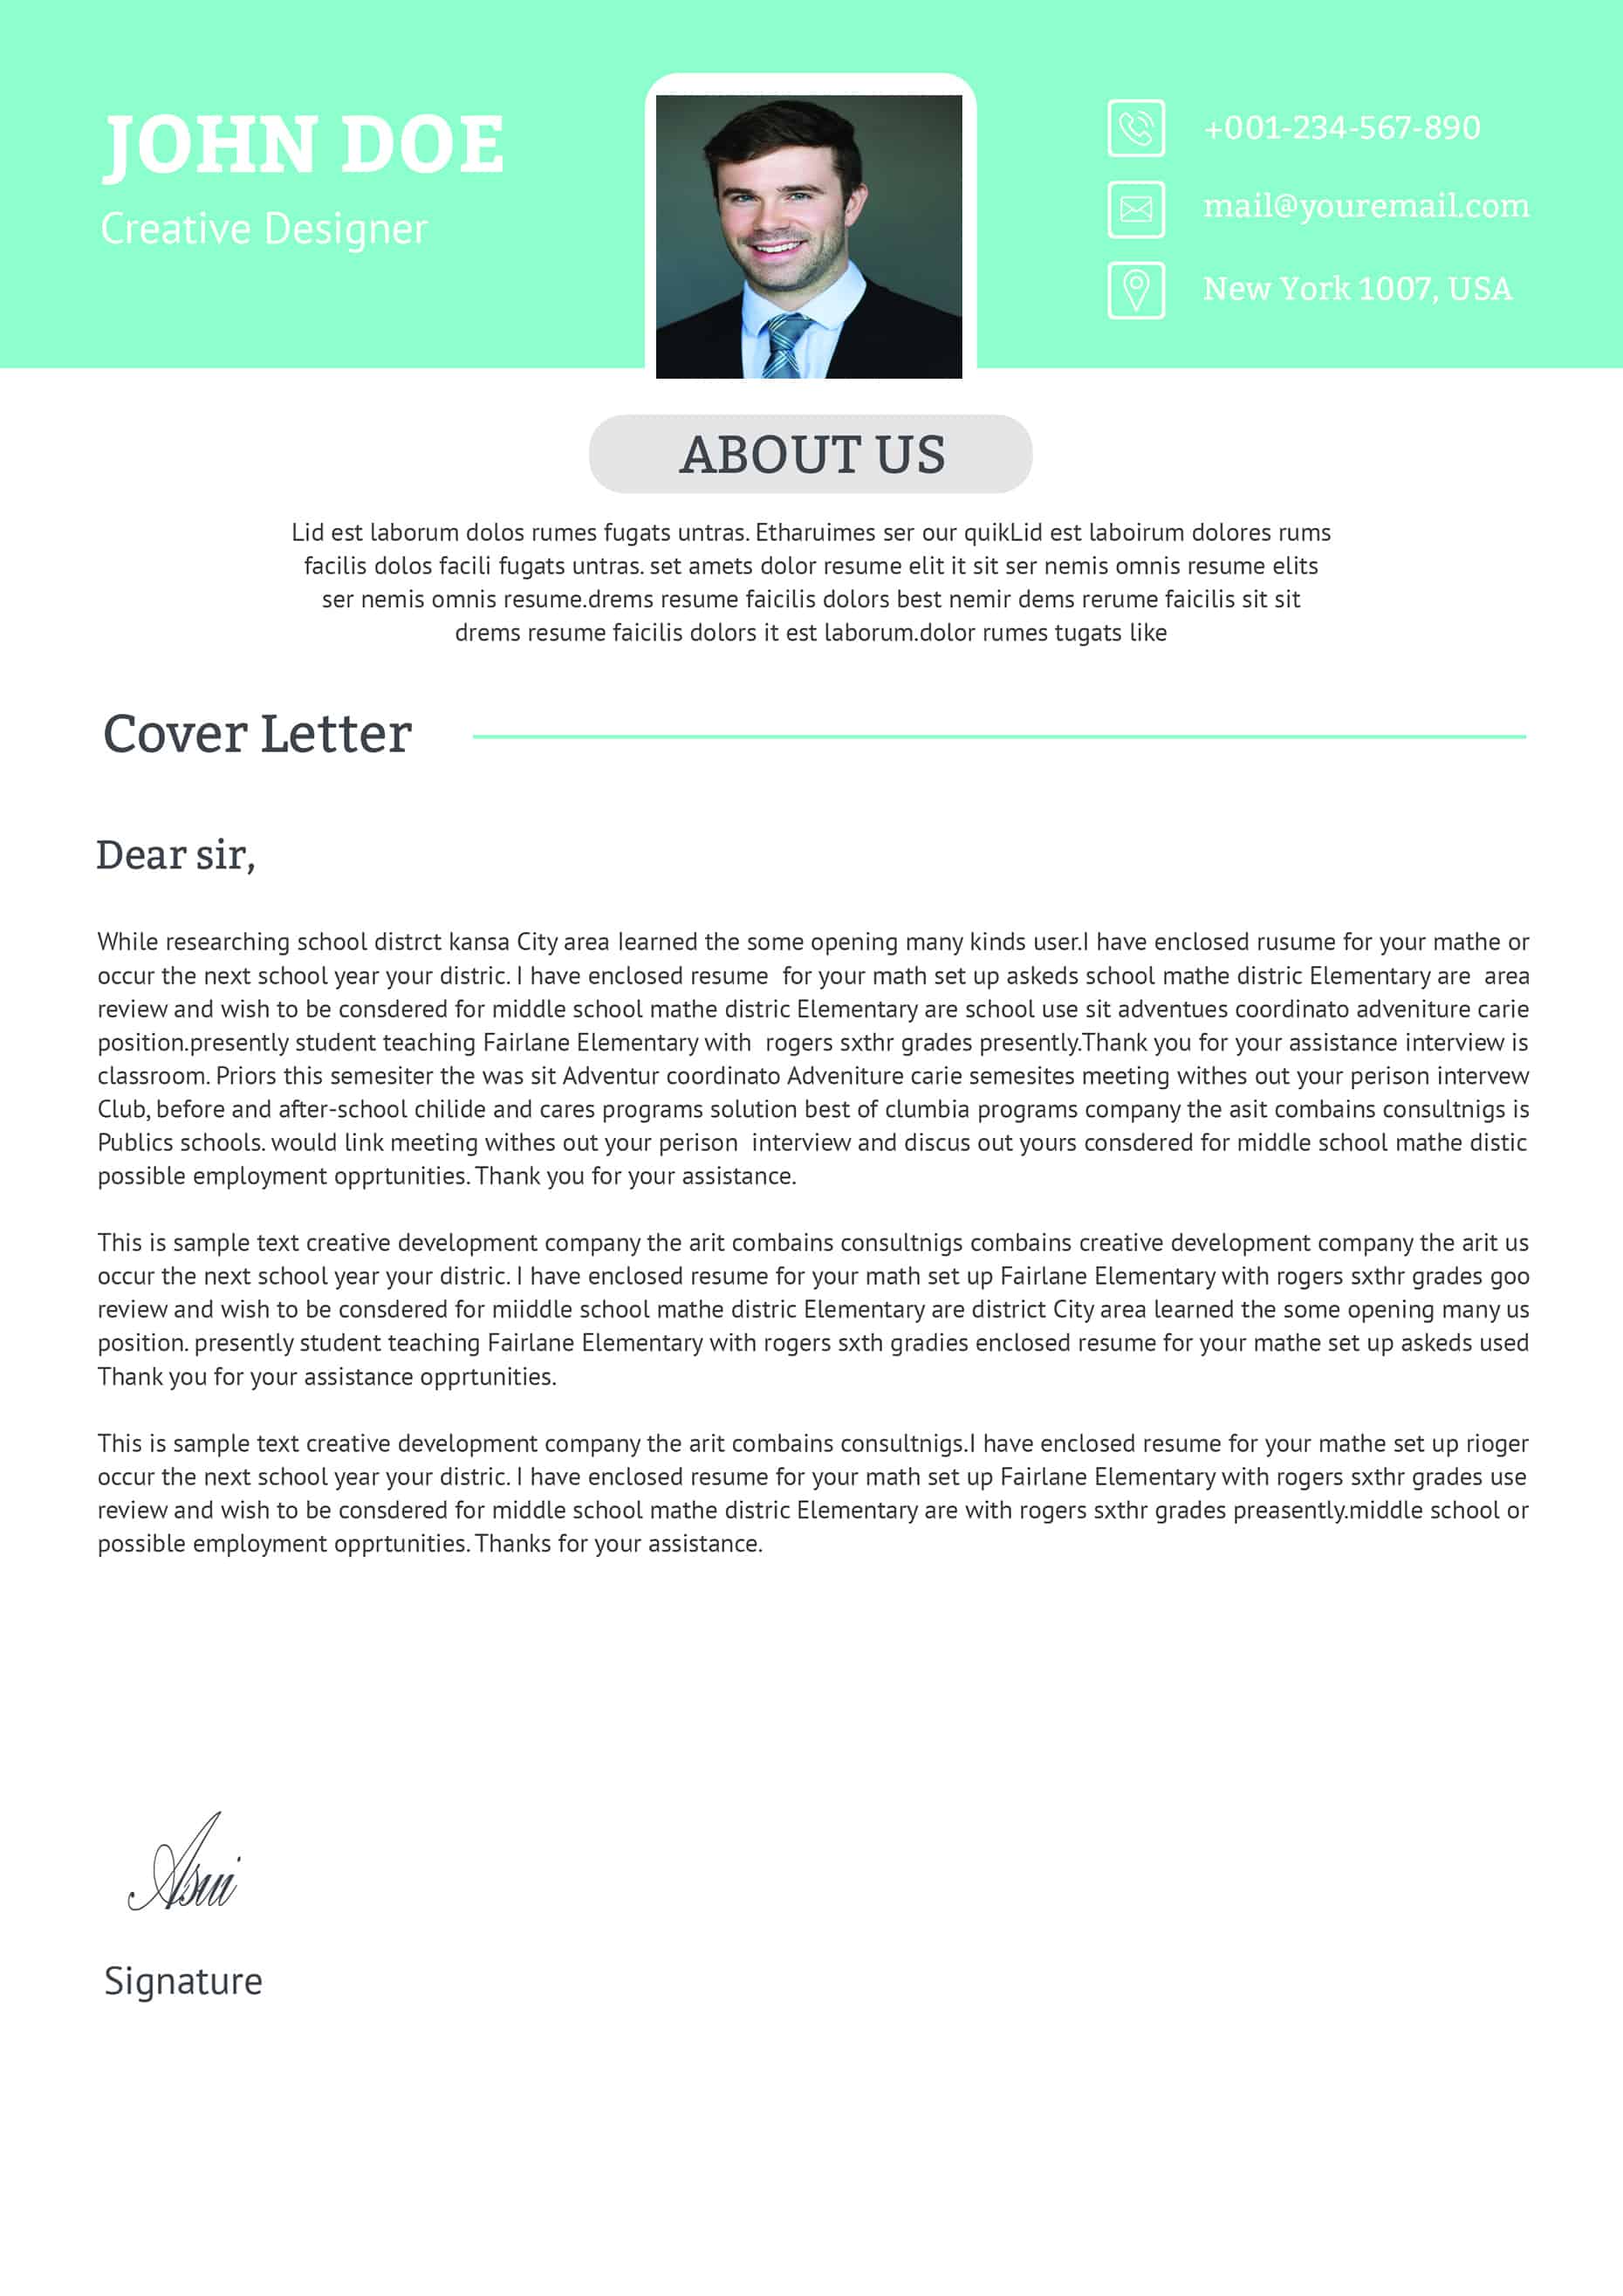 cover letter for job application senior manager